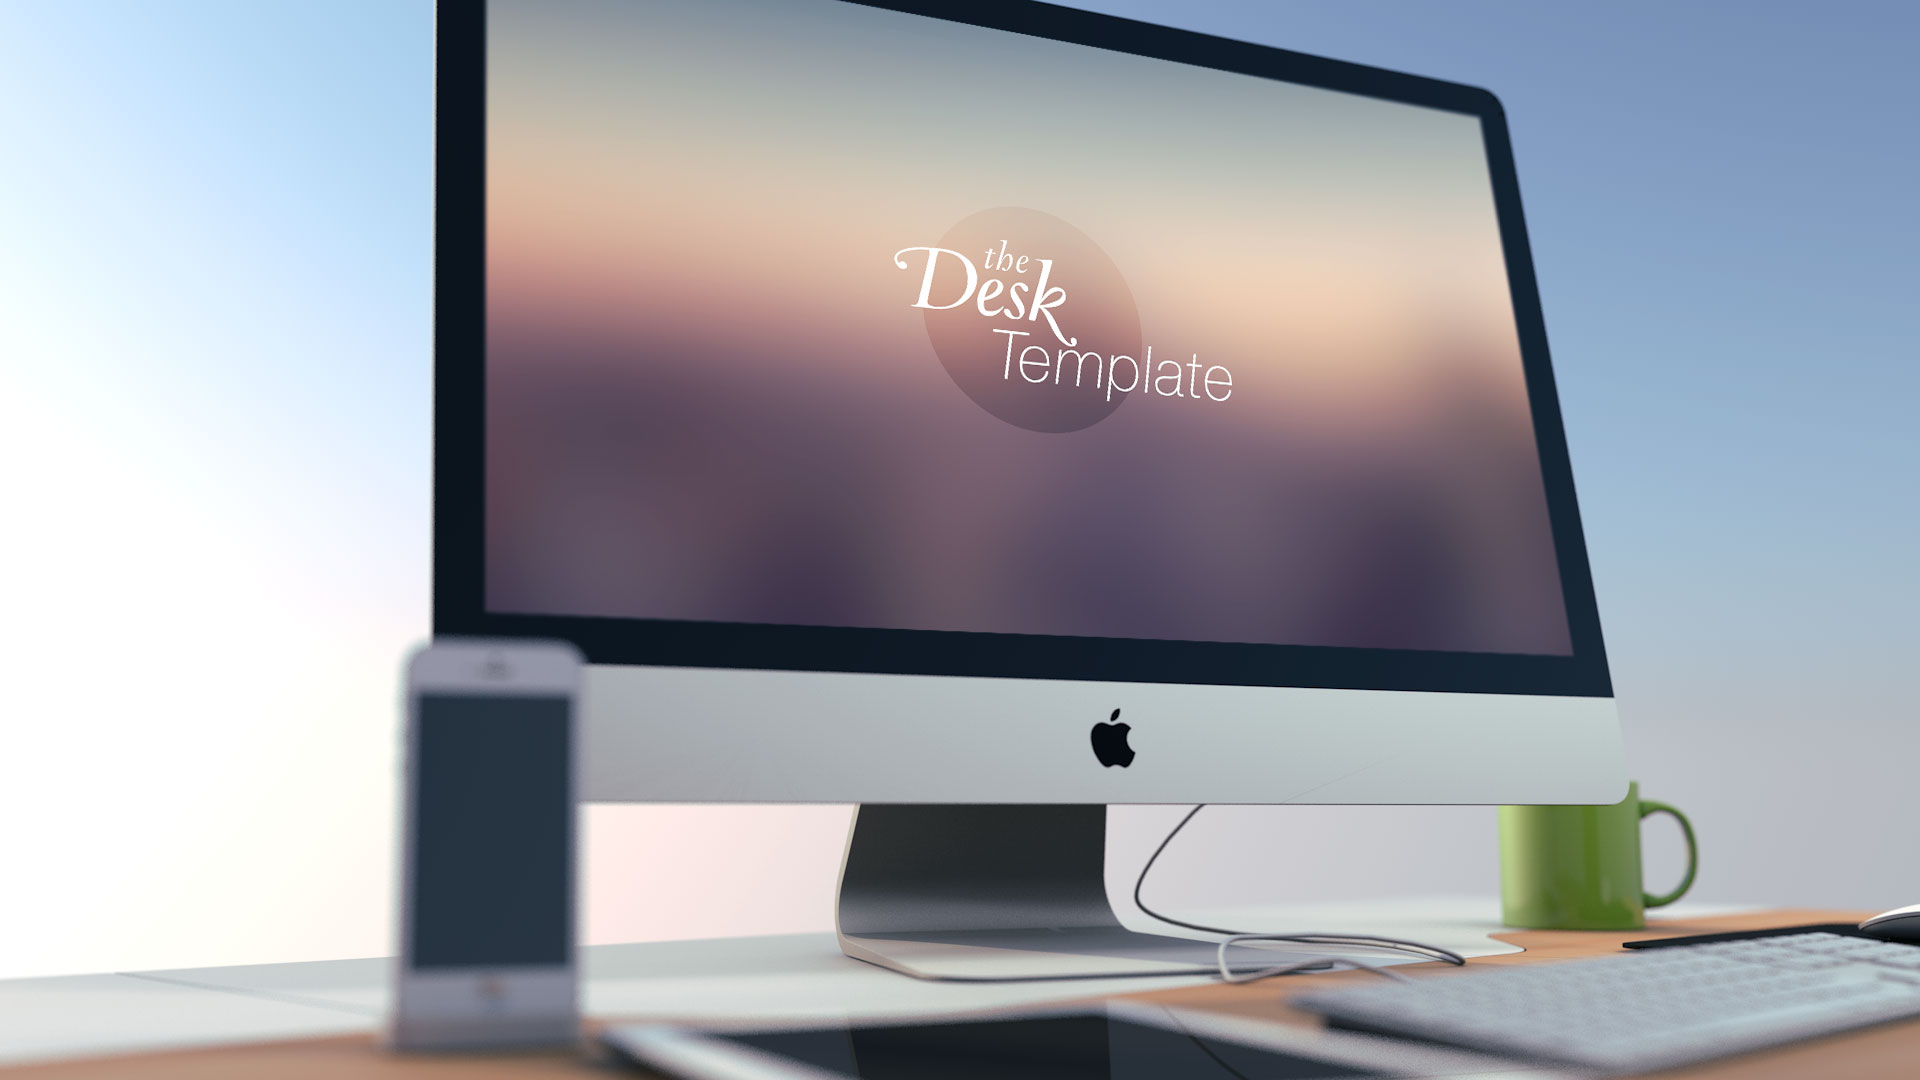 Dribbble - iMac-Template-2.jpg by Jeremy Paul